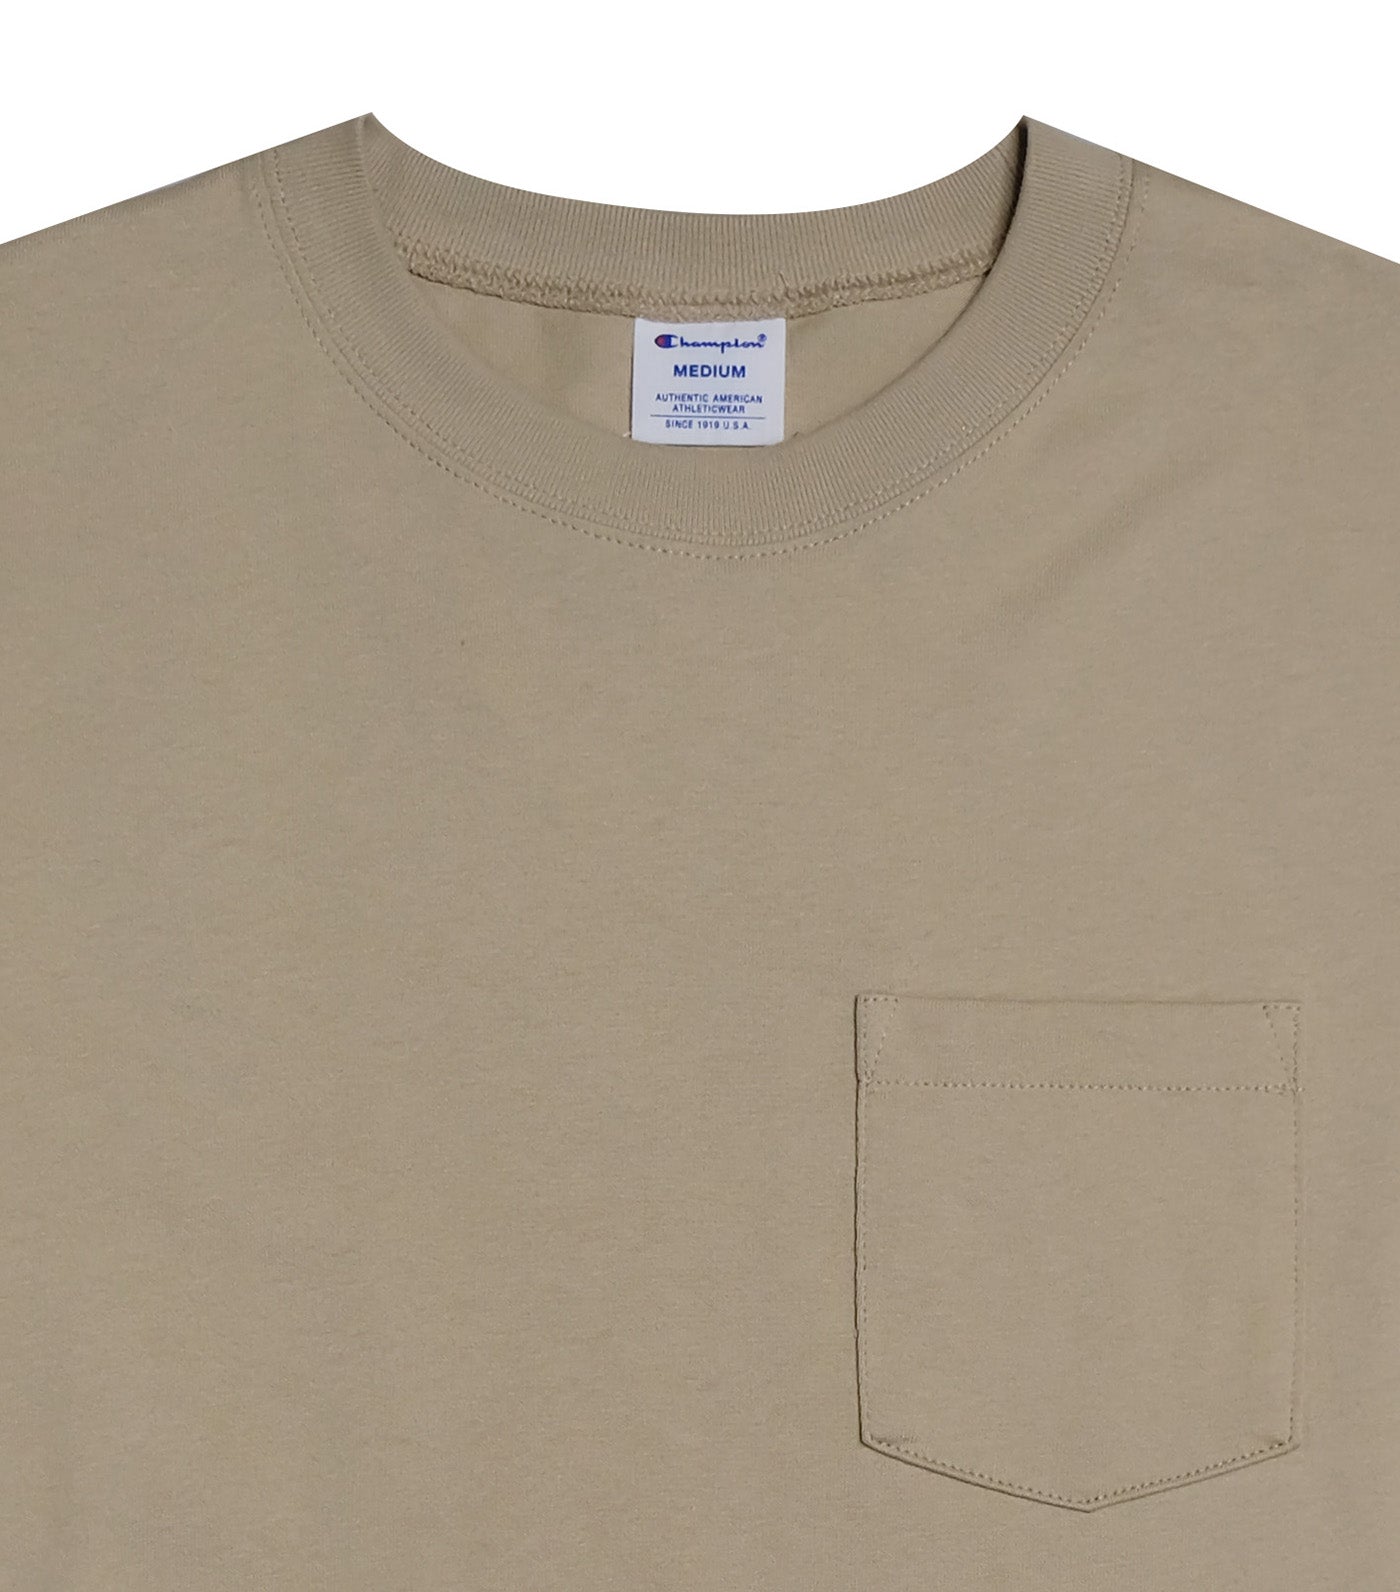 Japan Line Short Sleeve Pocket T-Shirt Sand Beige